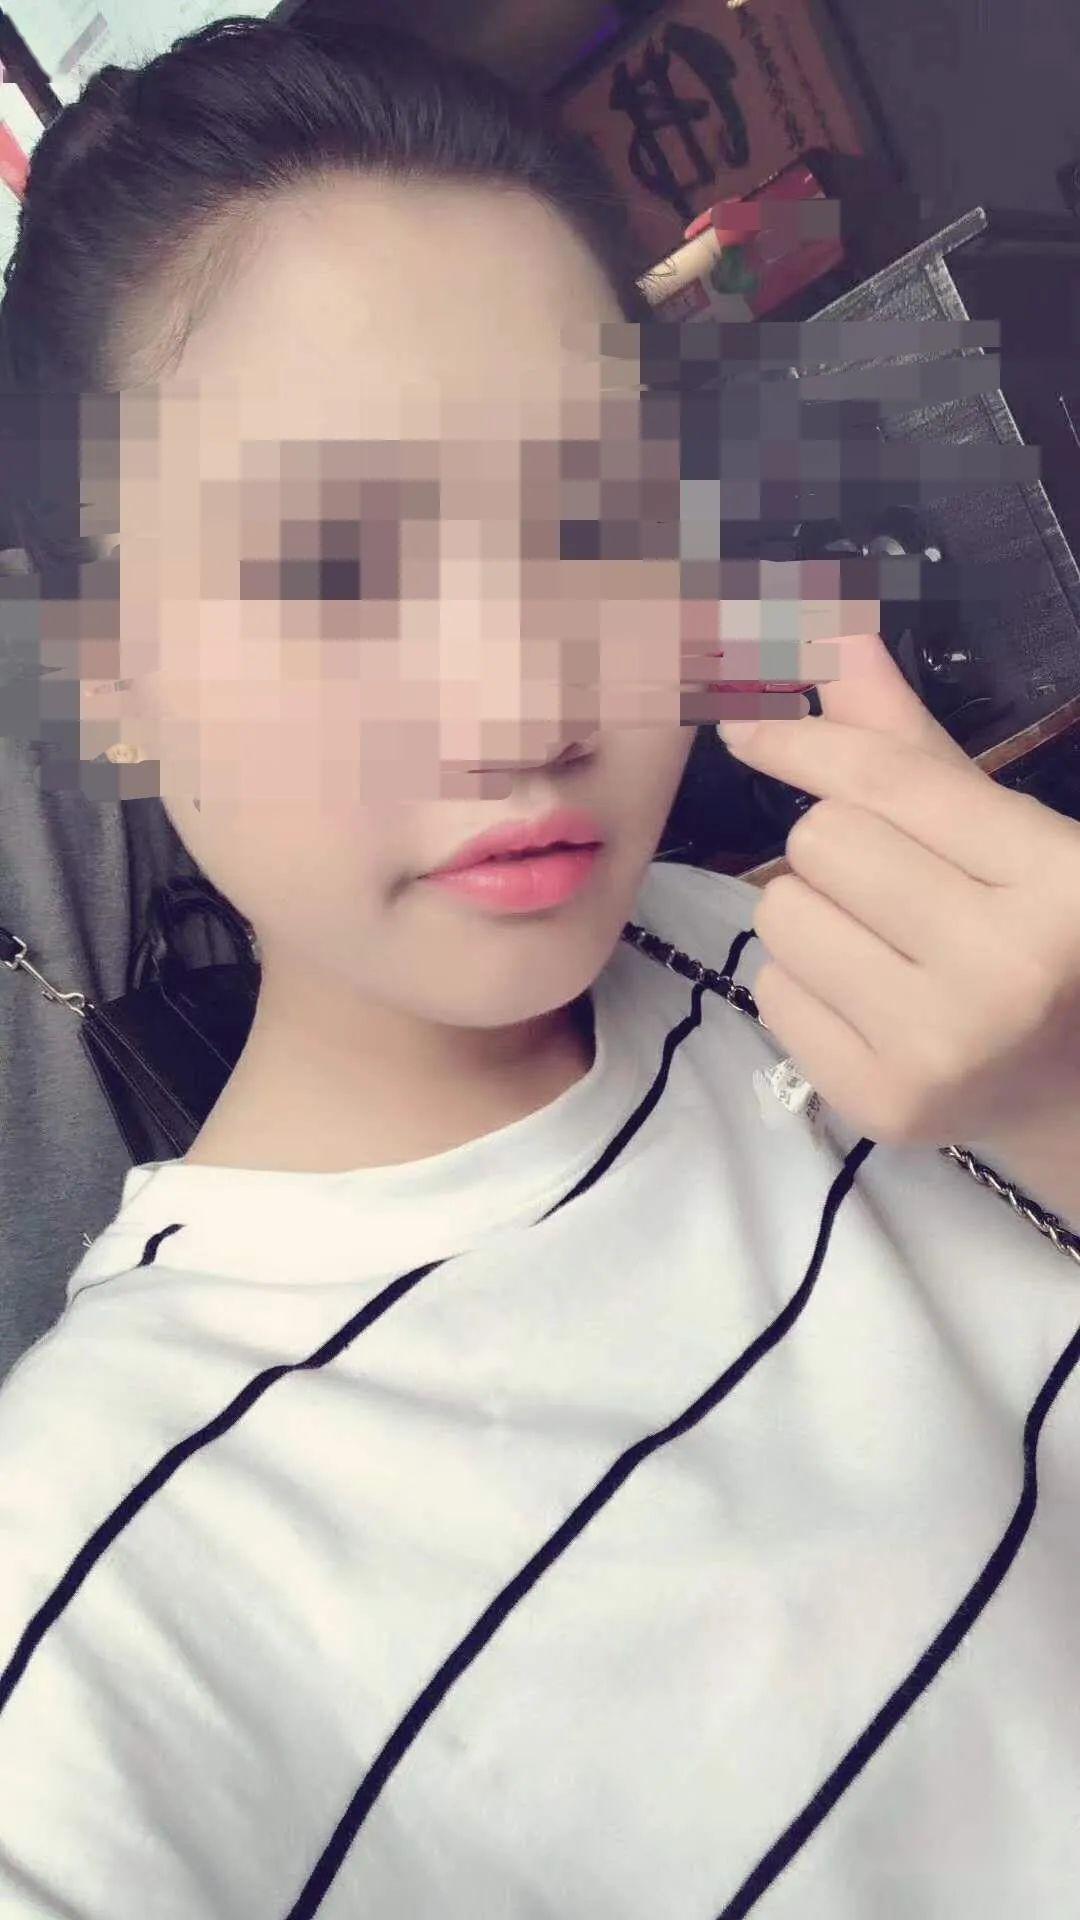 邵阳23岁女子在深圳被害,后遭碎尸并丢入垃圾桶